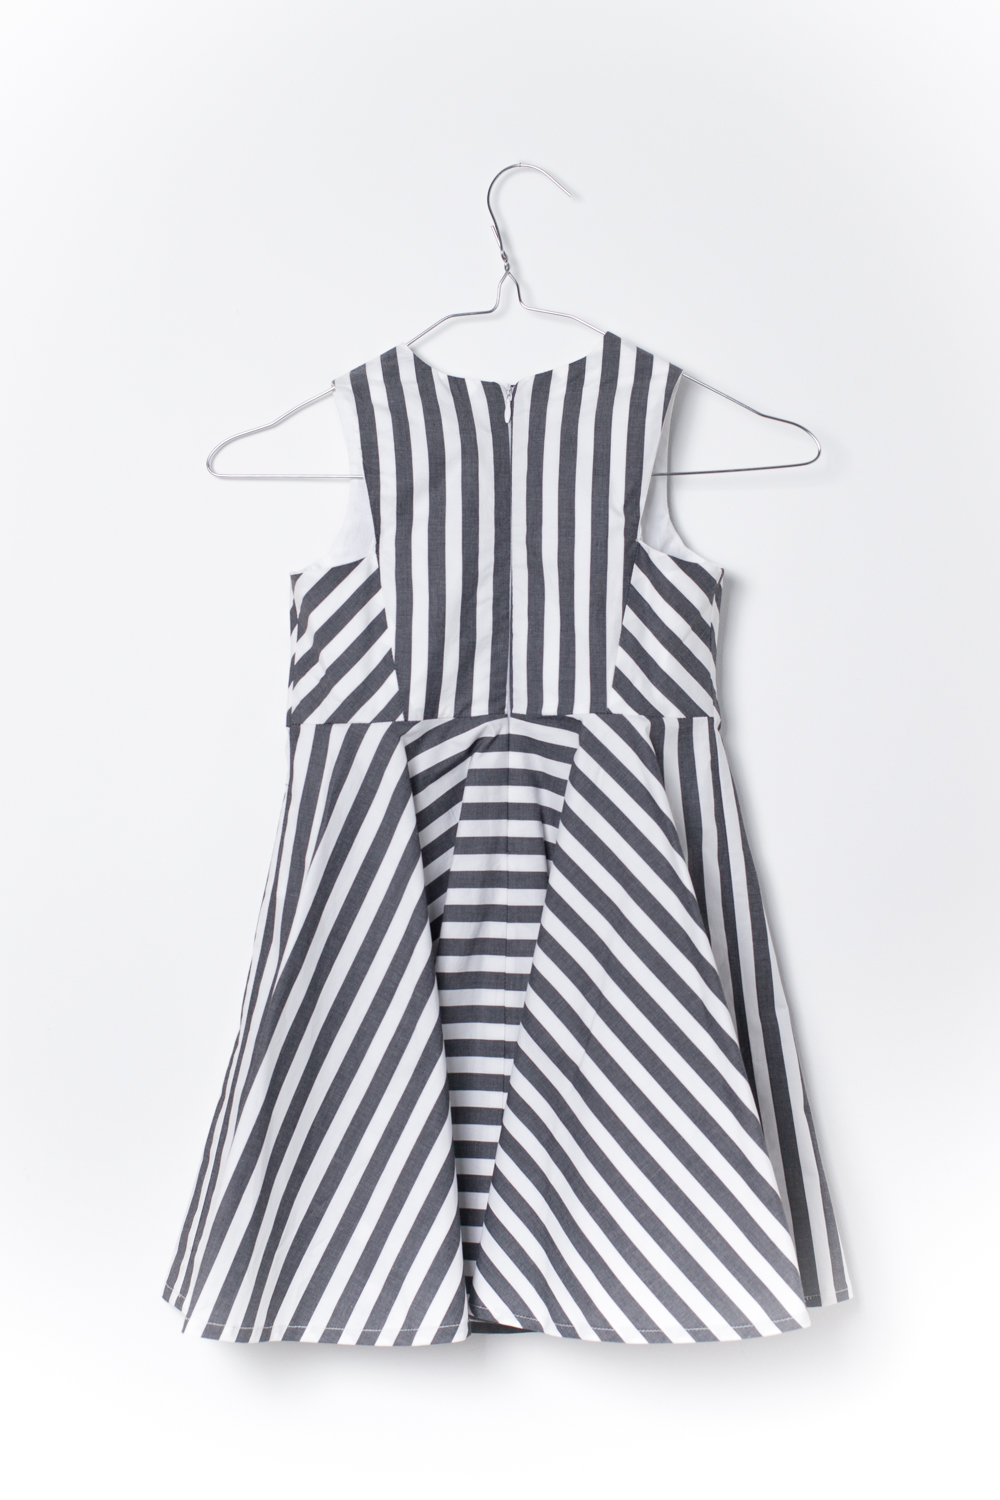 Rosa Dress Black & White stripes – MOTORETA